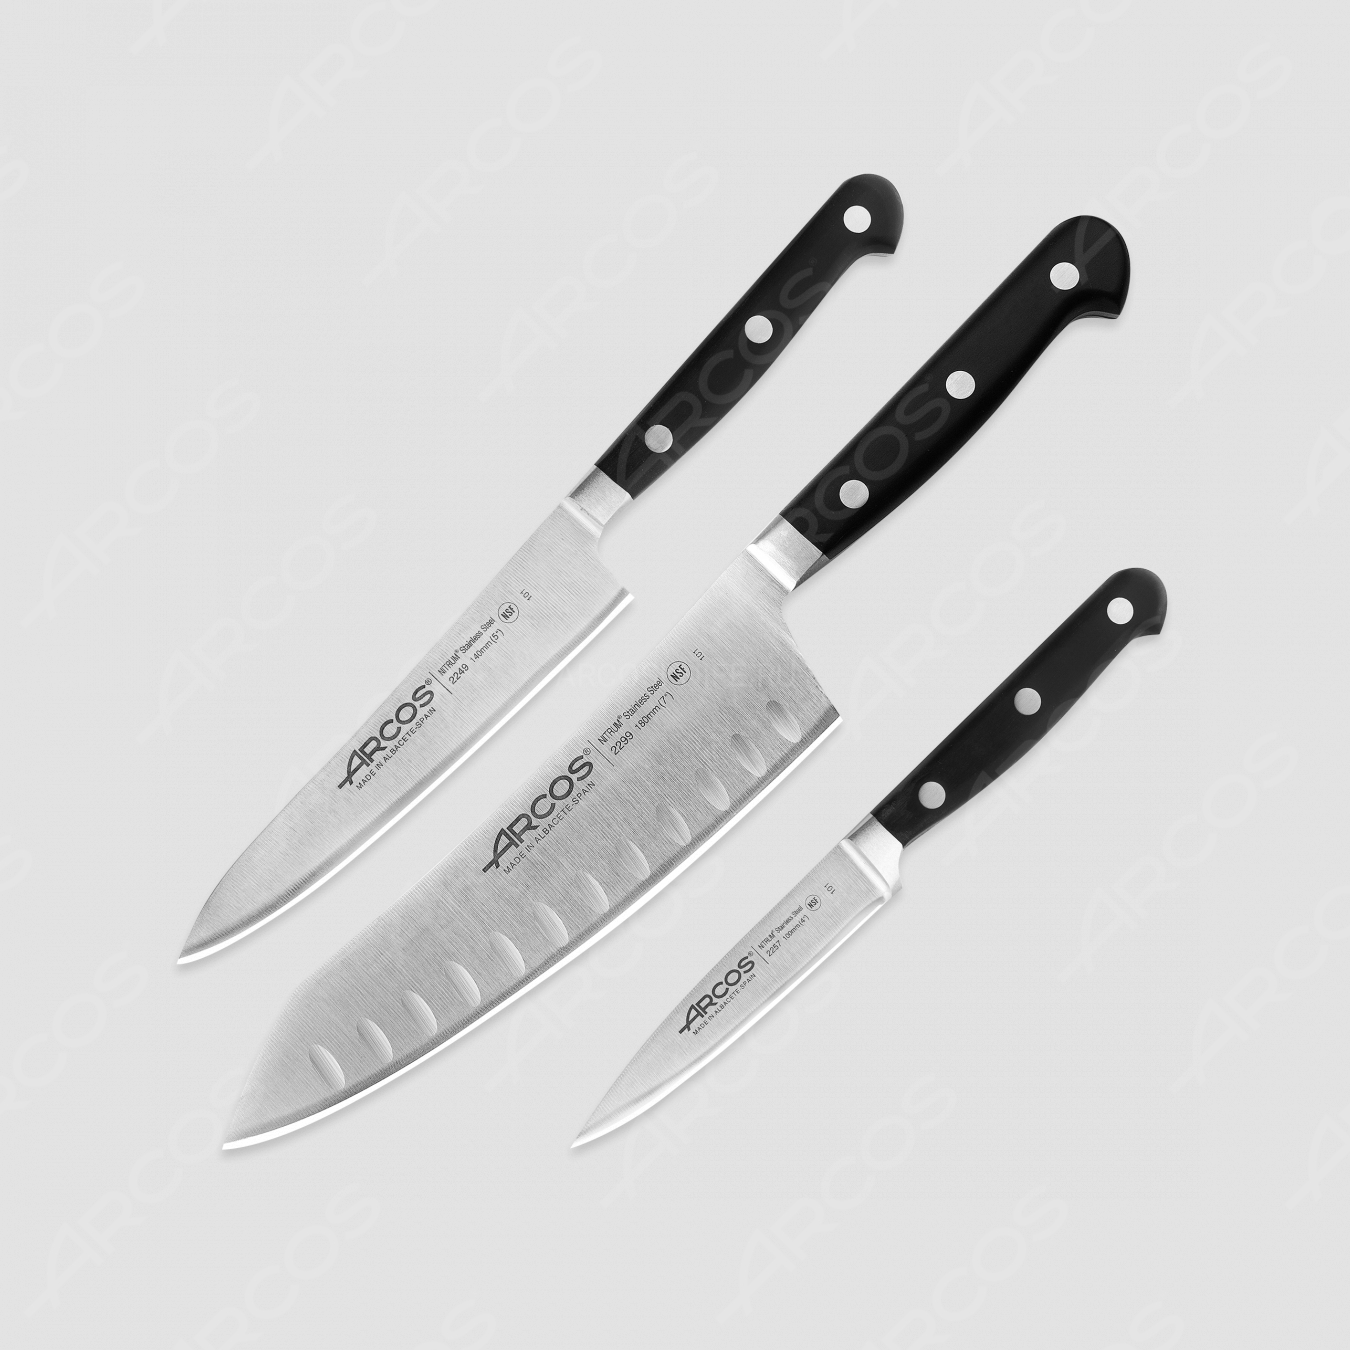 Набор кухонных ножей 3 шт (10 см, 14 см, 18 см,), серия Opera, ARCOS, Испания